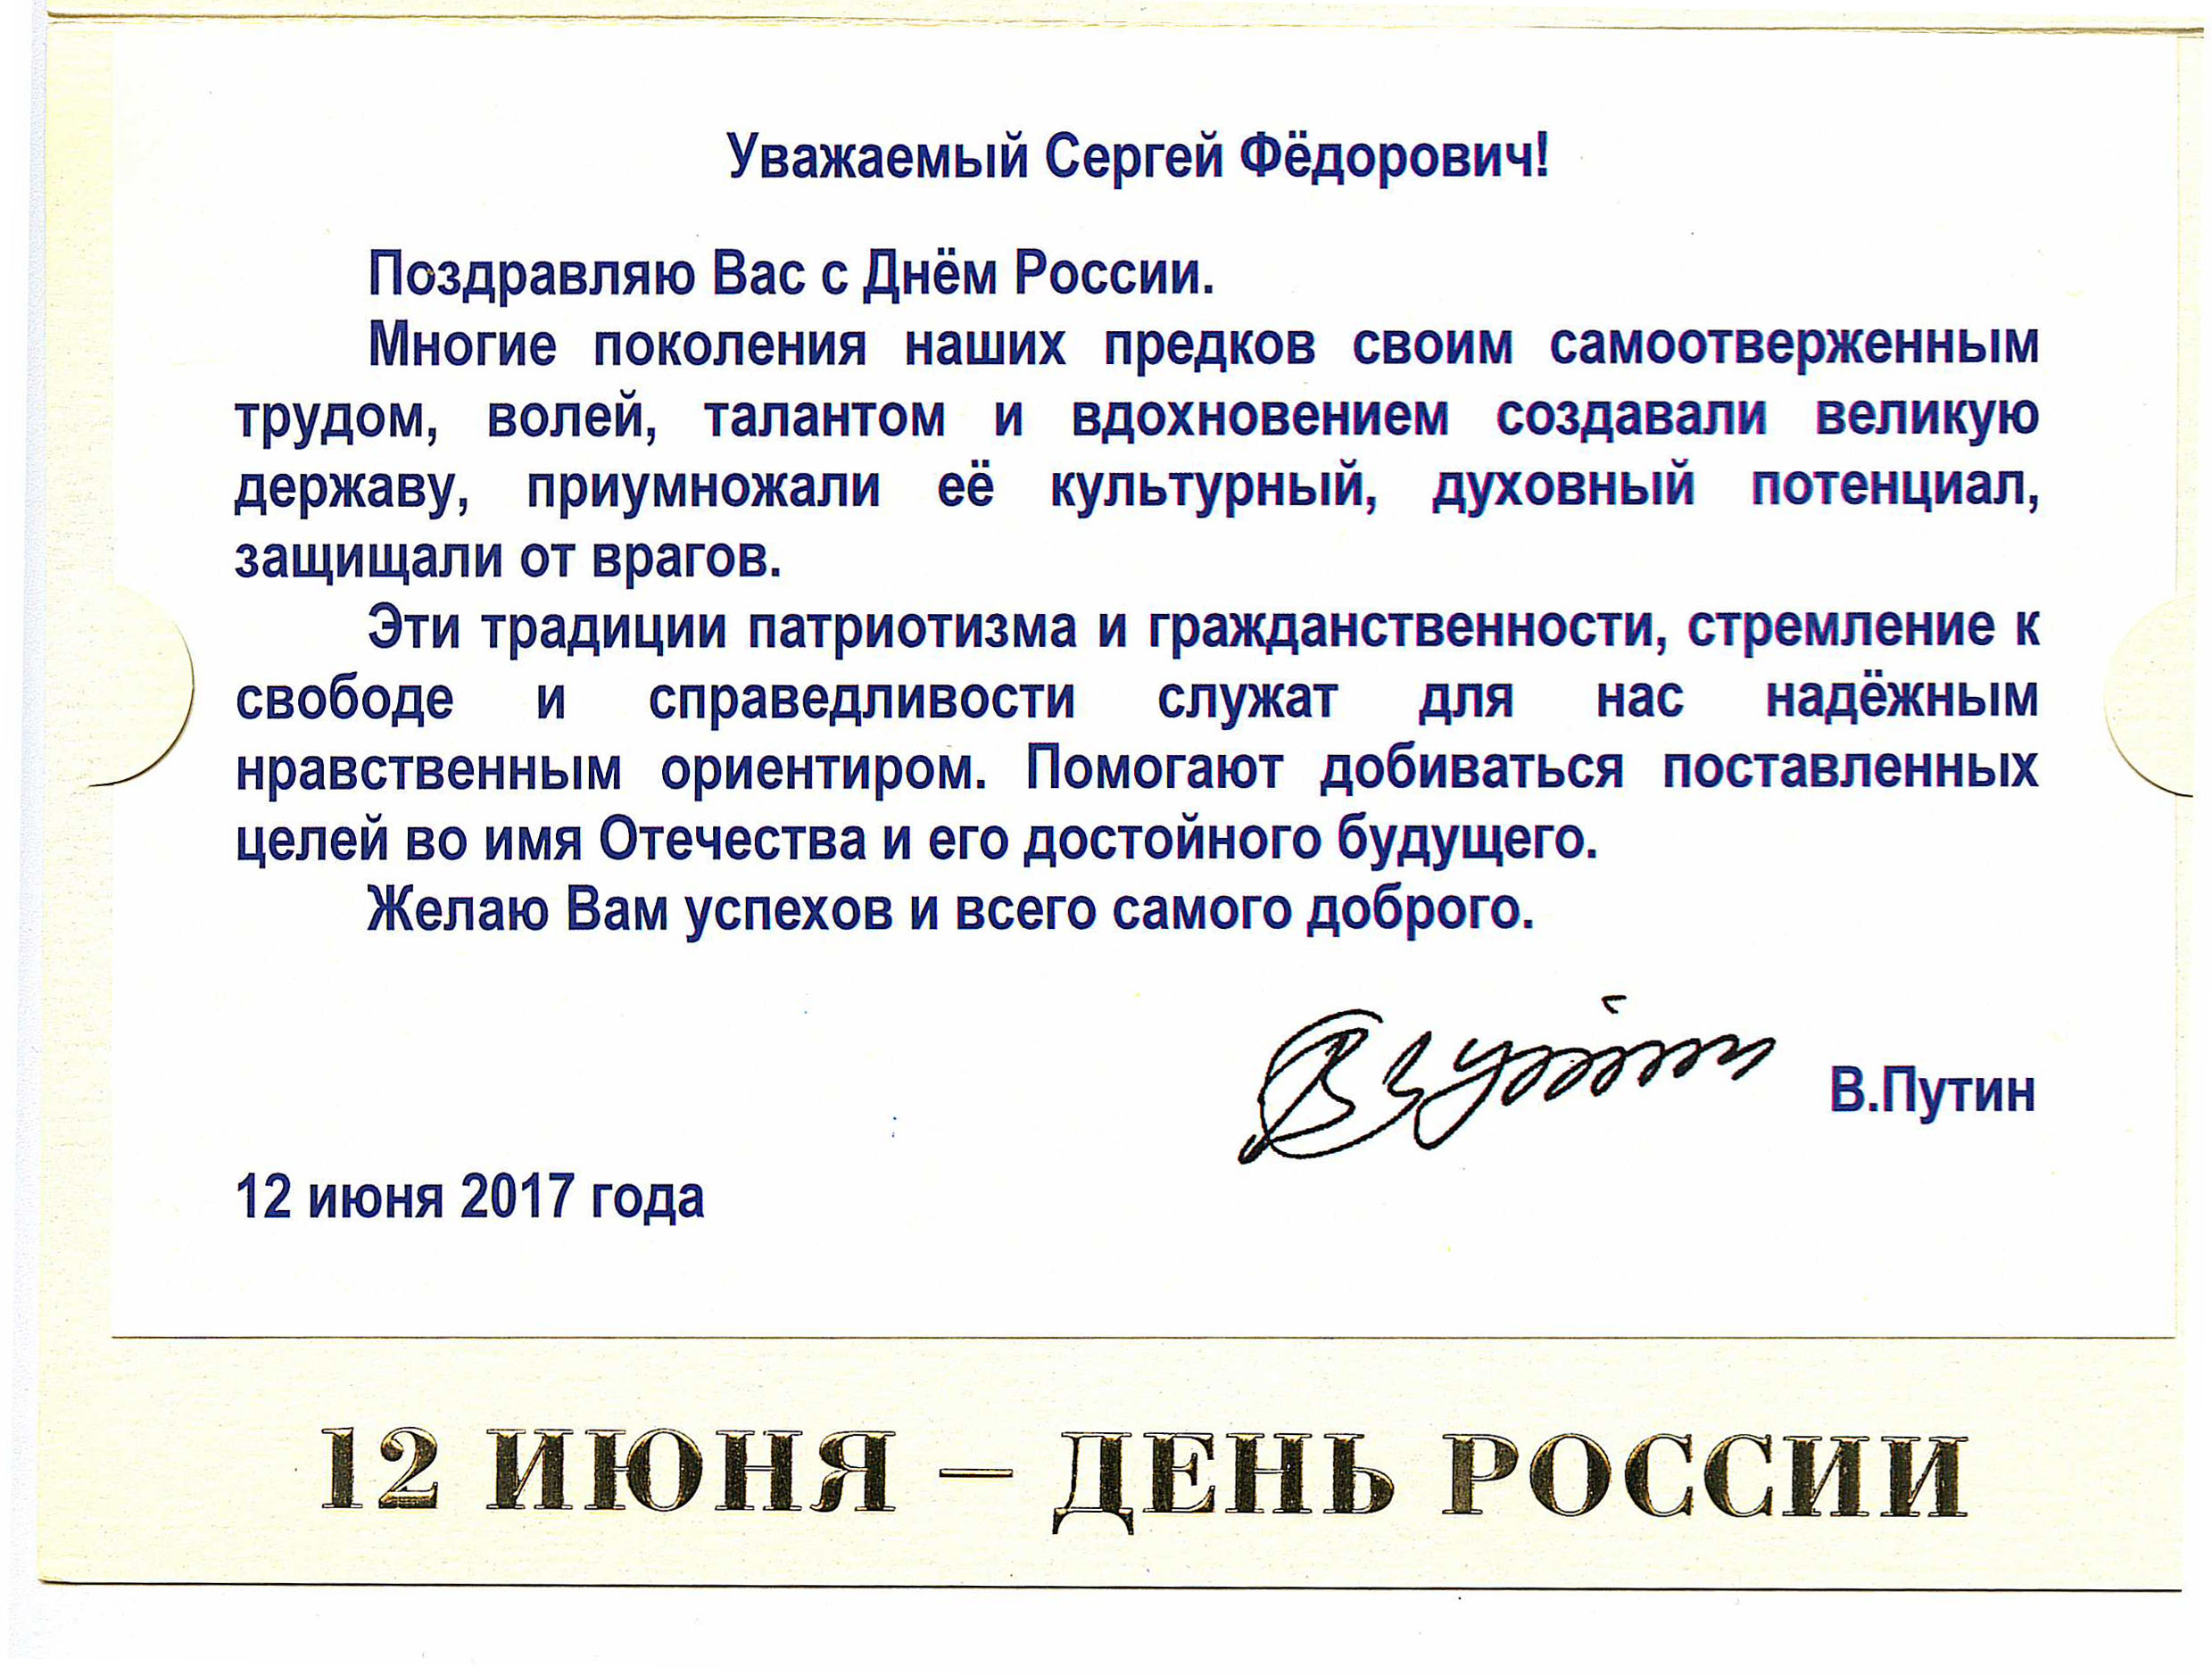 Поздравление от ВВПутина 12 июня 2017 года